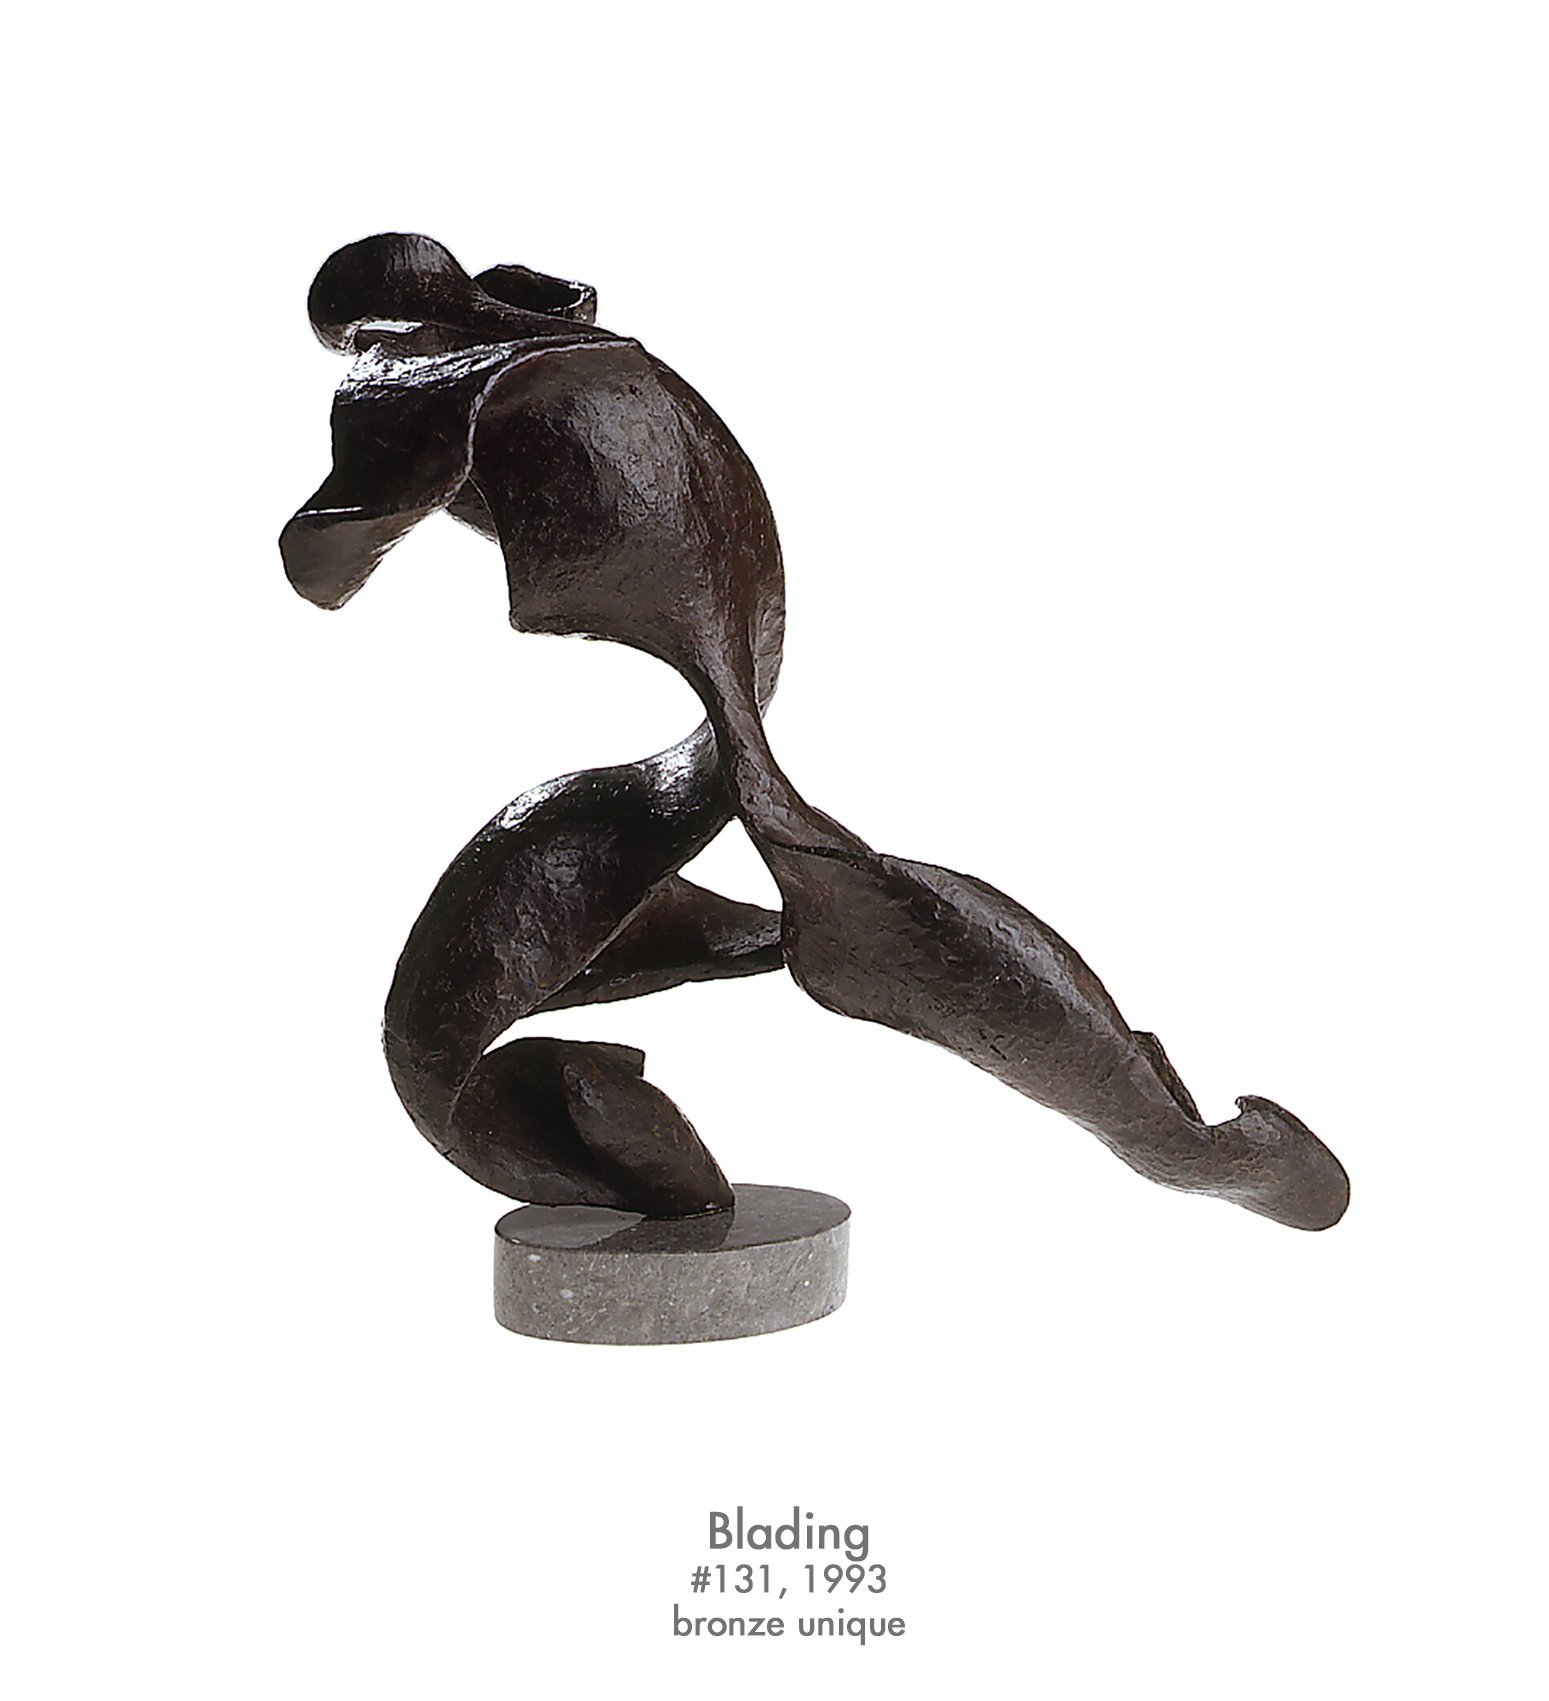 Blading, 1993, bronze, #131